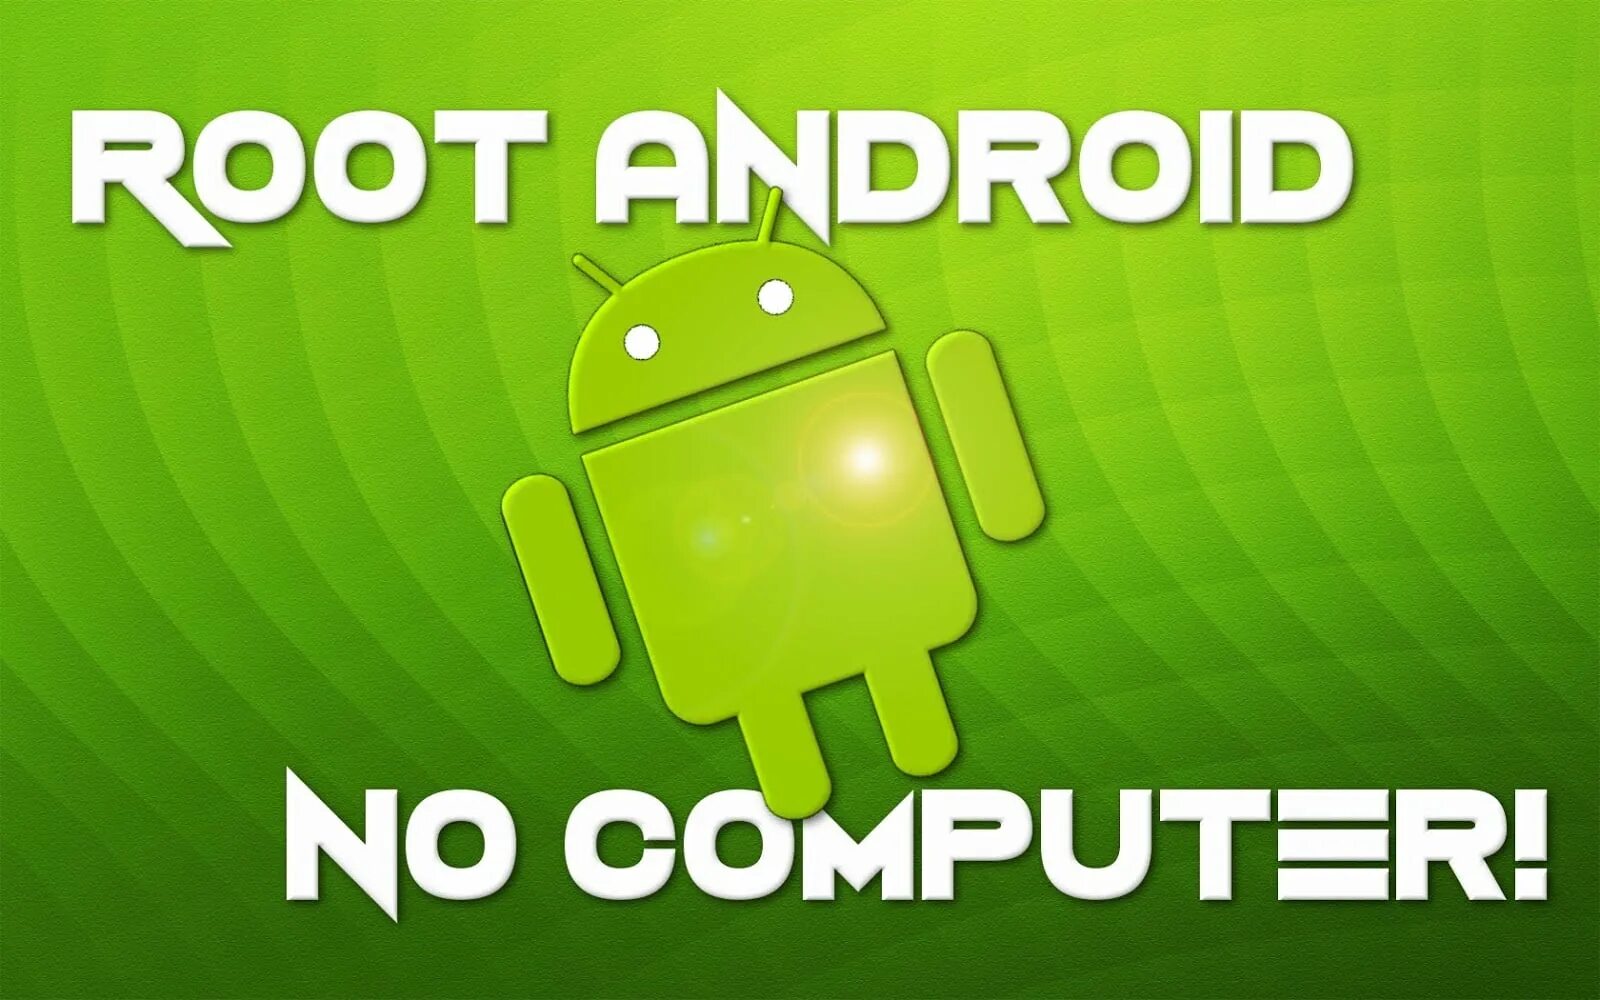 Рут на андроид через компьютер. Рут Android. Компьютер андроид. Android c root правами.